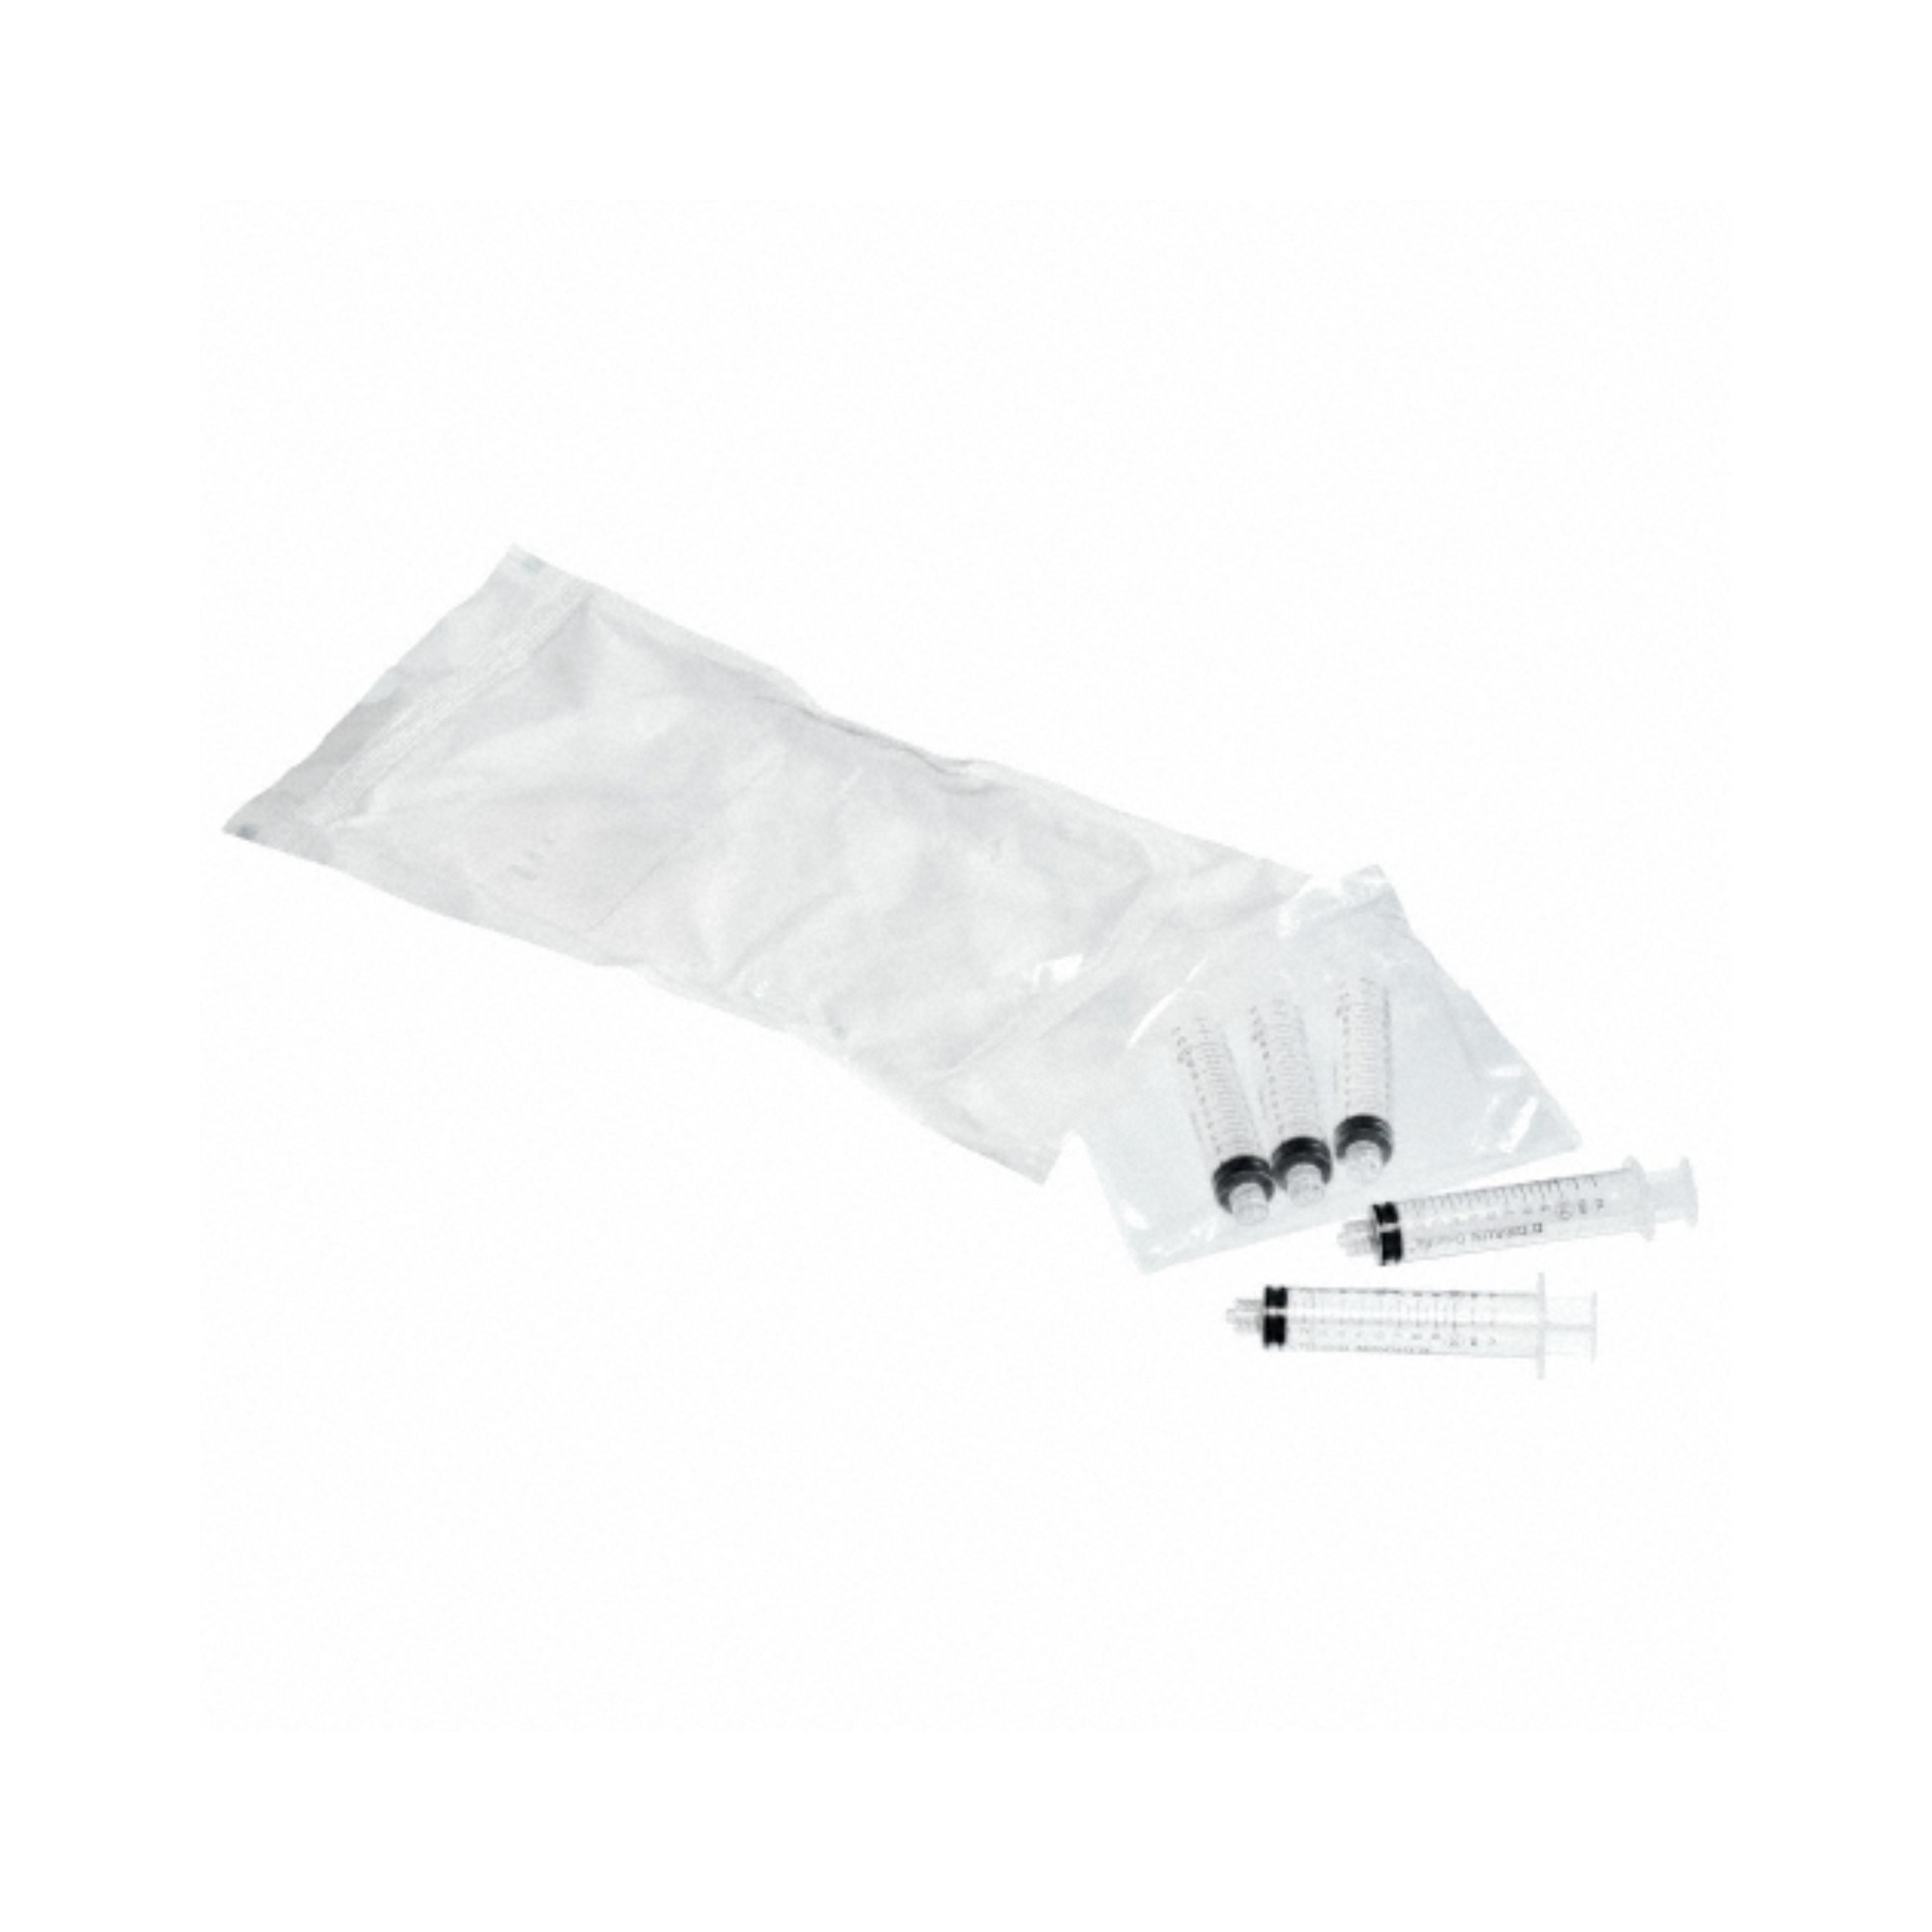 Ein sterilisiertes medizinisches Set mit mehreren B. Braun ProSet Omnifix® Set Sammelpackung Einmalspritzen und Fläschchen, ordentlich verpackt in einem durchsichtigen, versiegelten Plastikbeutel auf weißem Hintergrund.